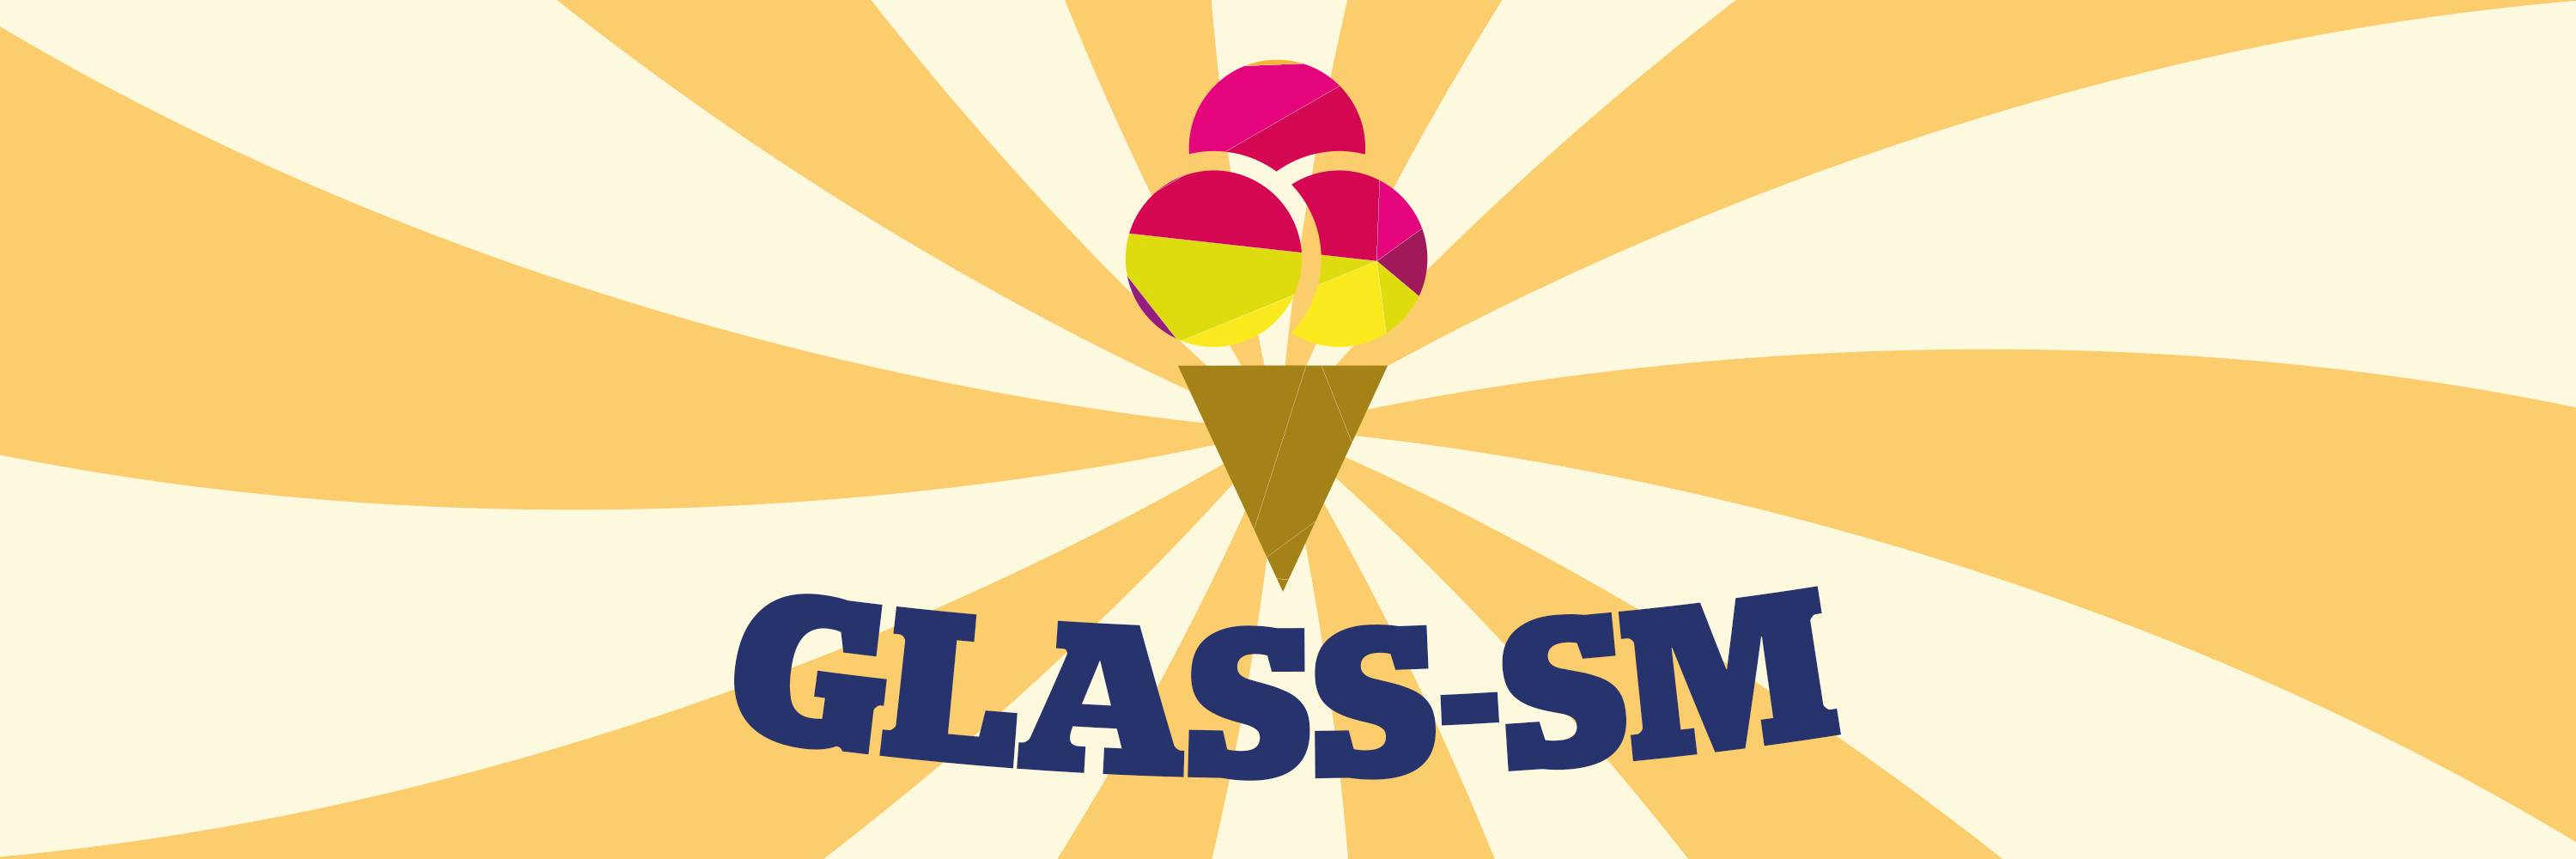 Glass-SM